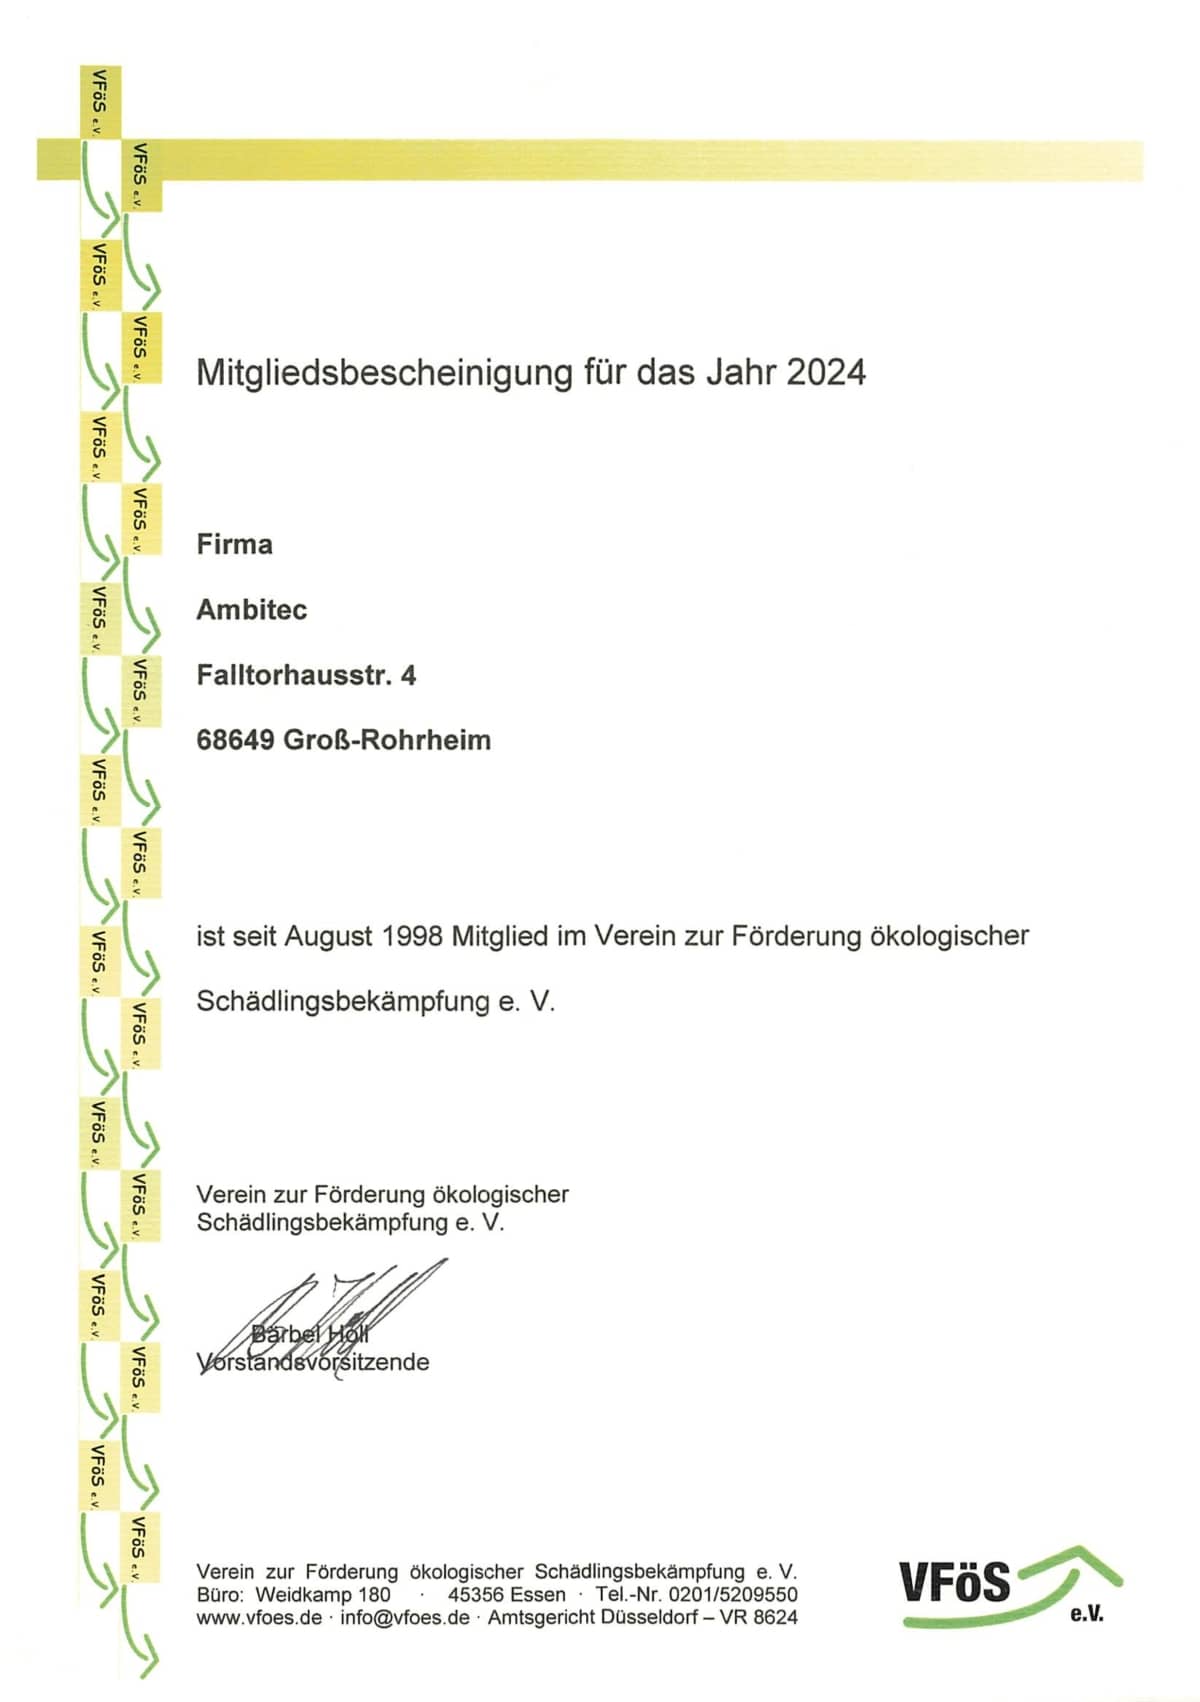 VFöS e. V. – Mitgliedsbescheinigung - 2024 - Ambitec Schädlingsbekämpfung in Hessen